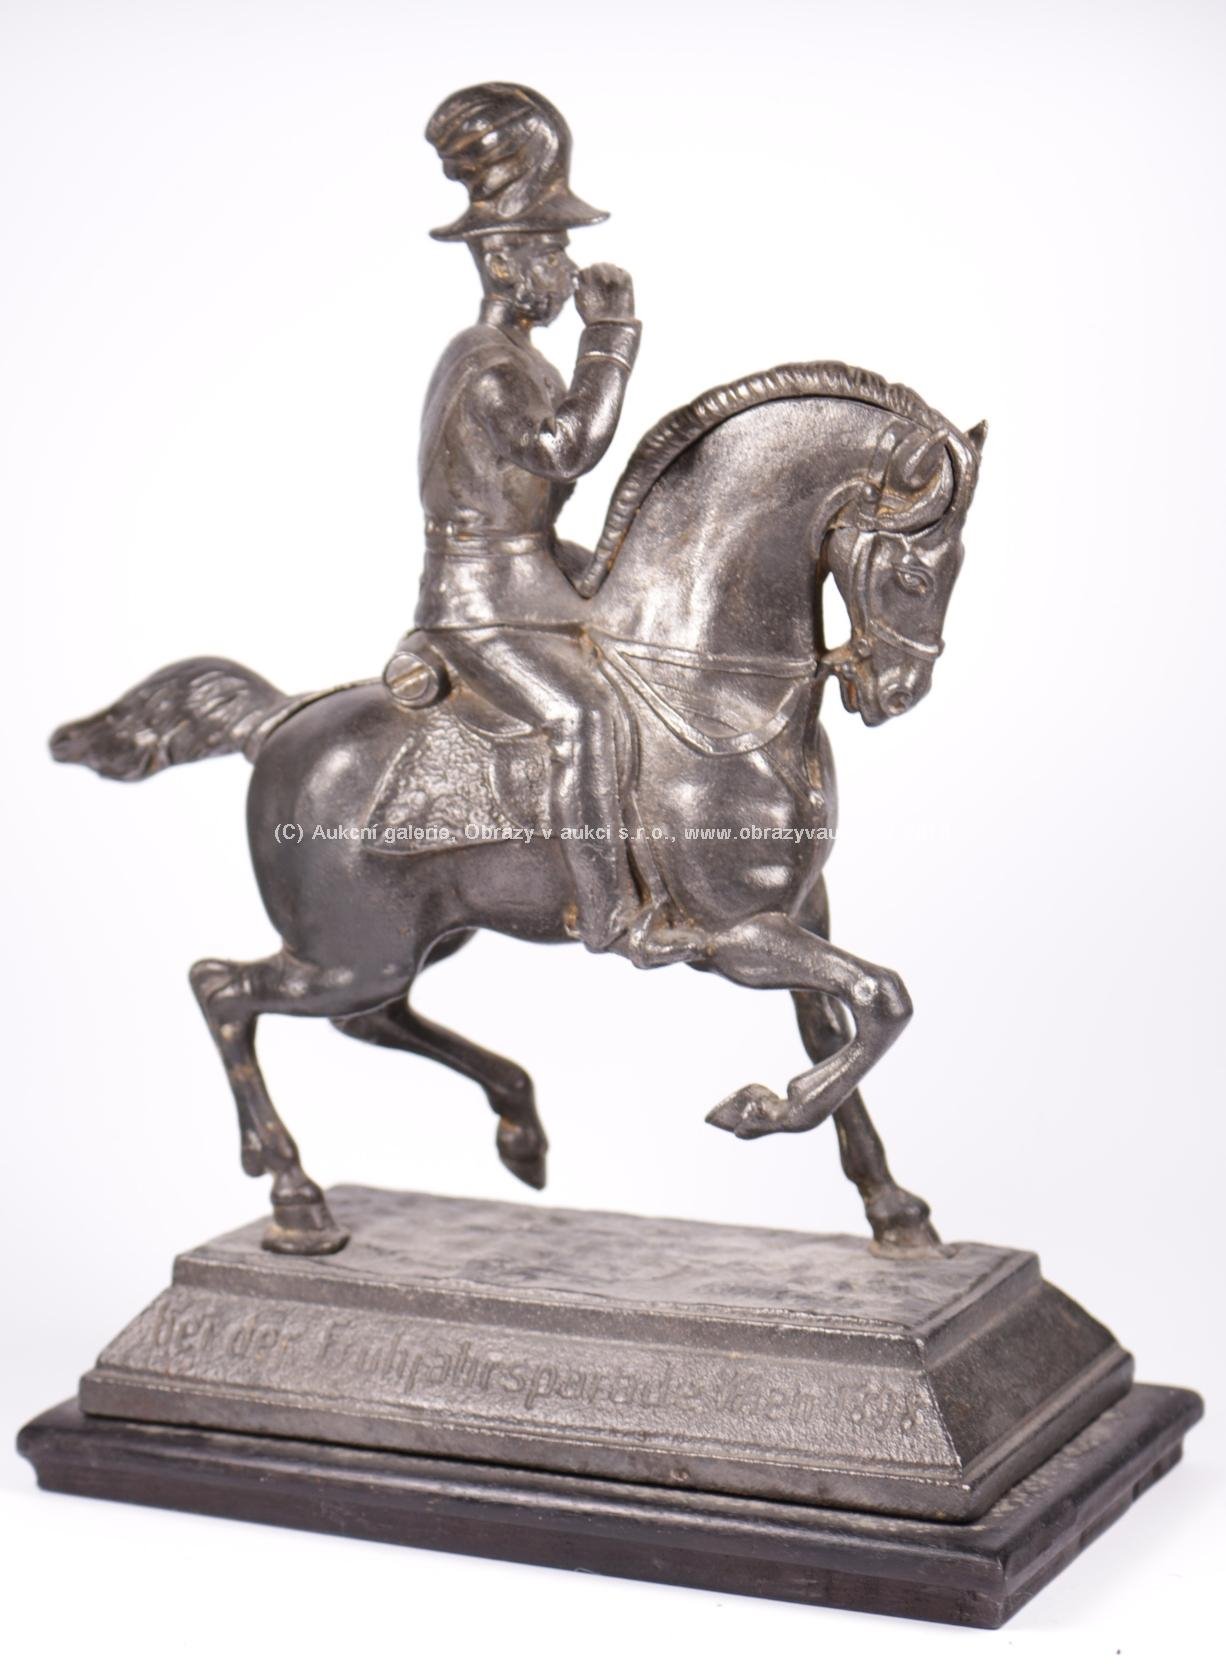 střední Evropa konec 19. století - Císař František Josef I. na koni, 1898